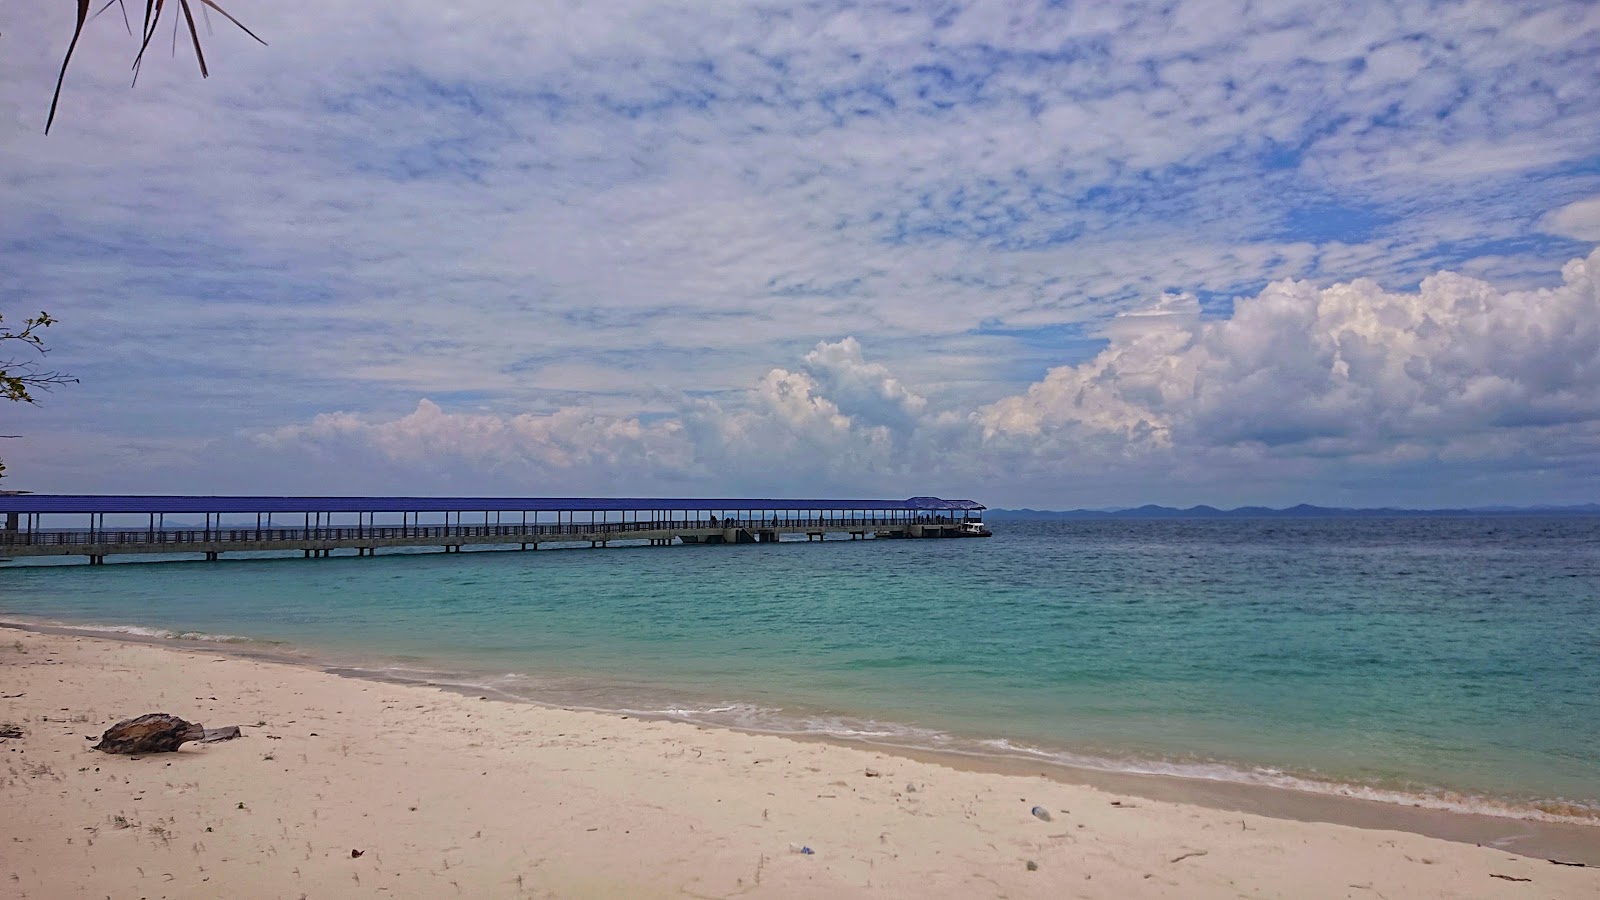 Fotografie cu Aseania Beach Resort sprijinit de stânci